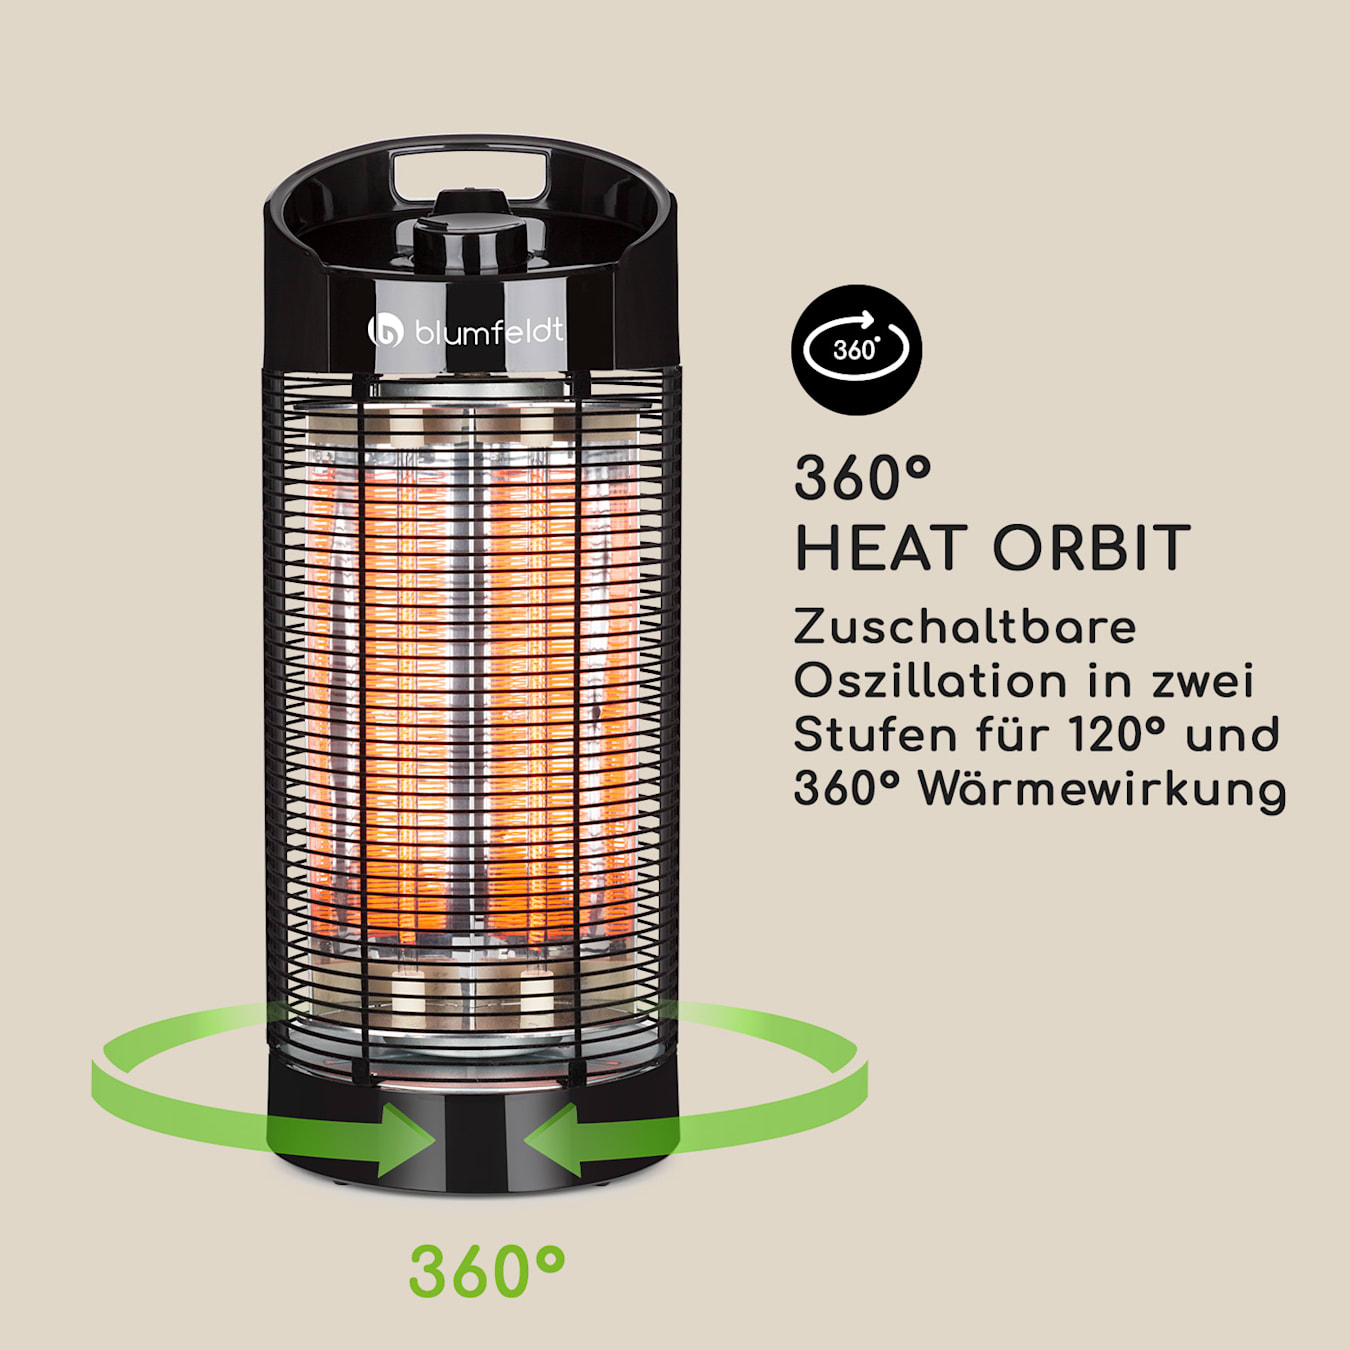 Arnold-Rak Heizmatte HeatMaster FH 21024-FS, 60 x 40cm, beheizbar